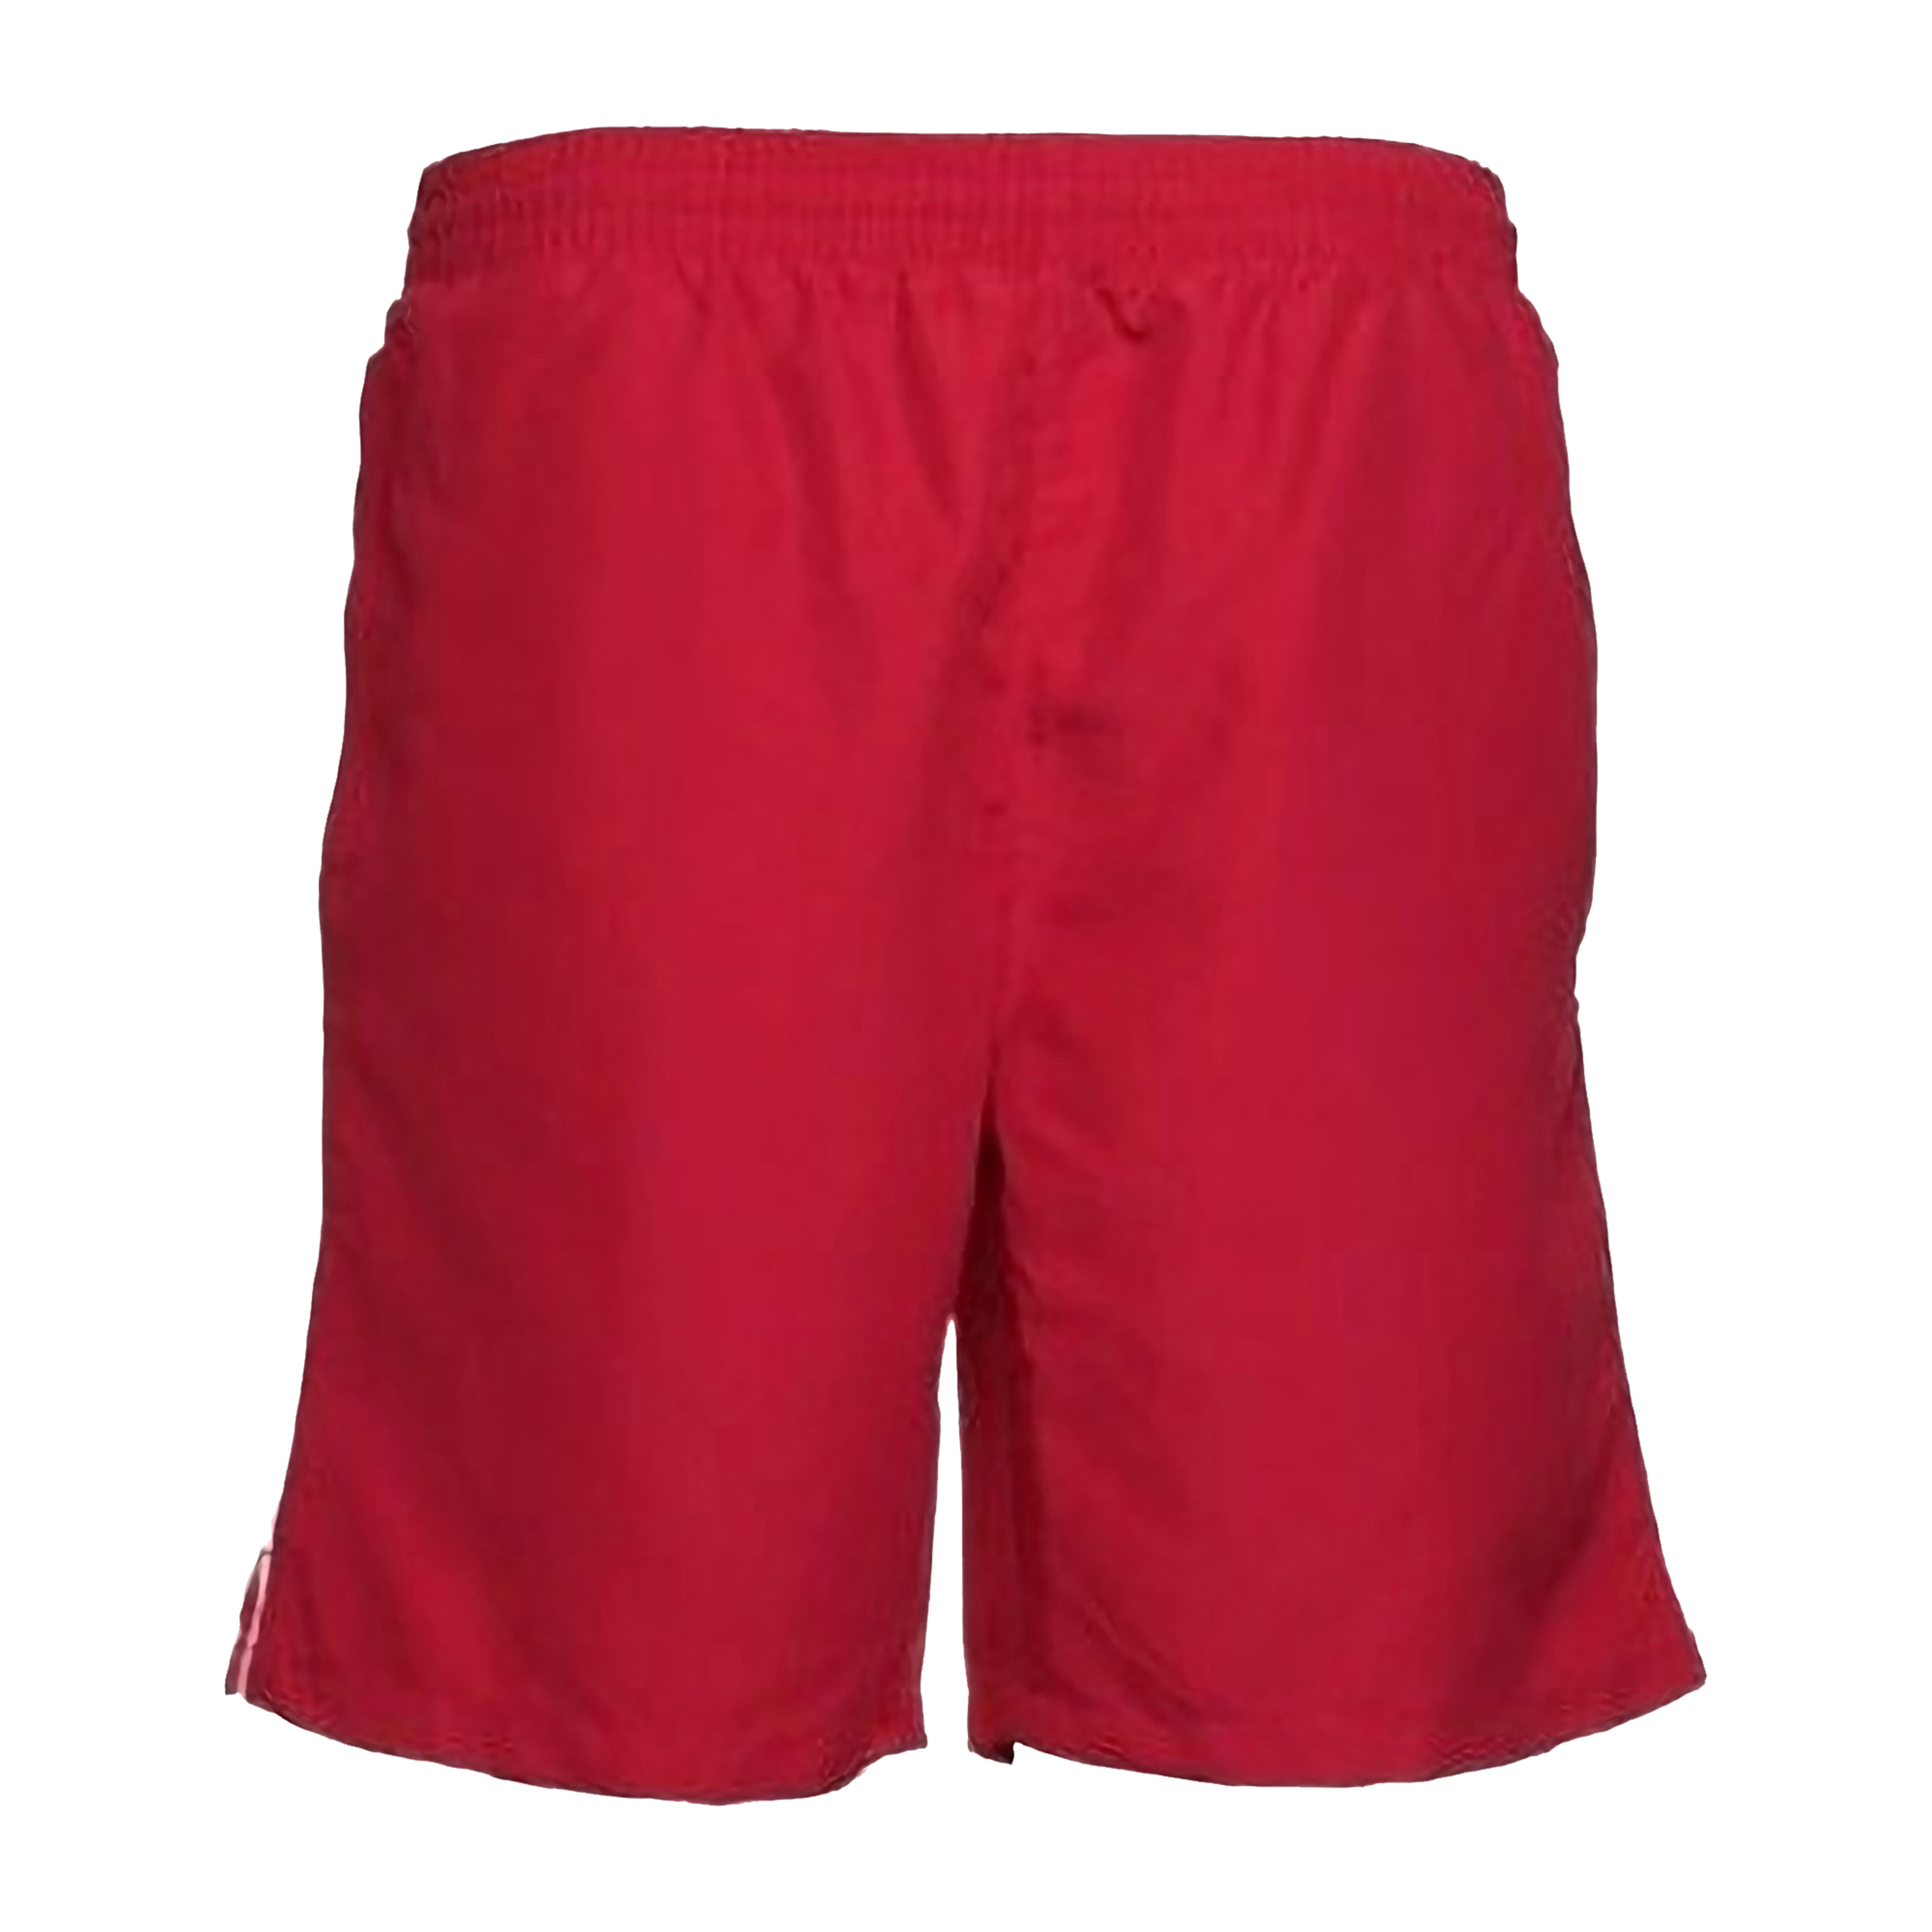 Pantalones Cortos De Deporte Gym/running/verano Gamegear - rojo - 